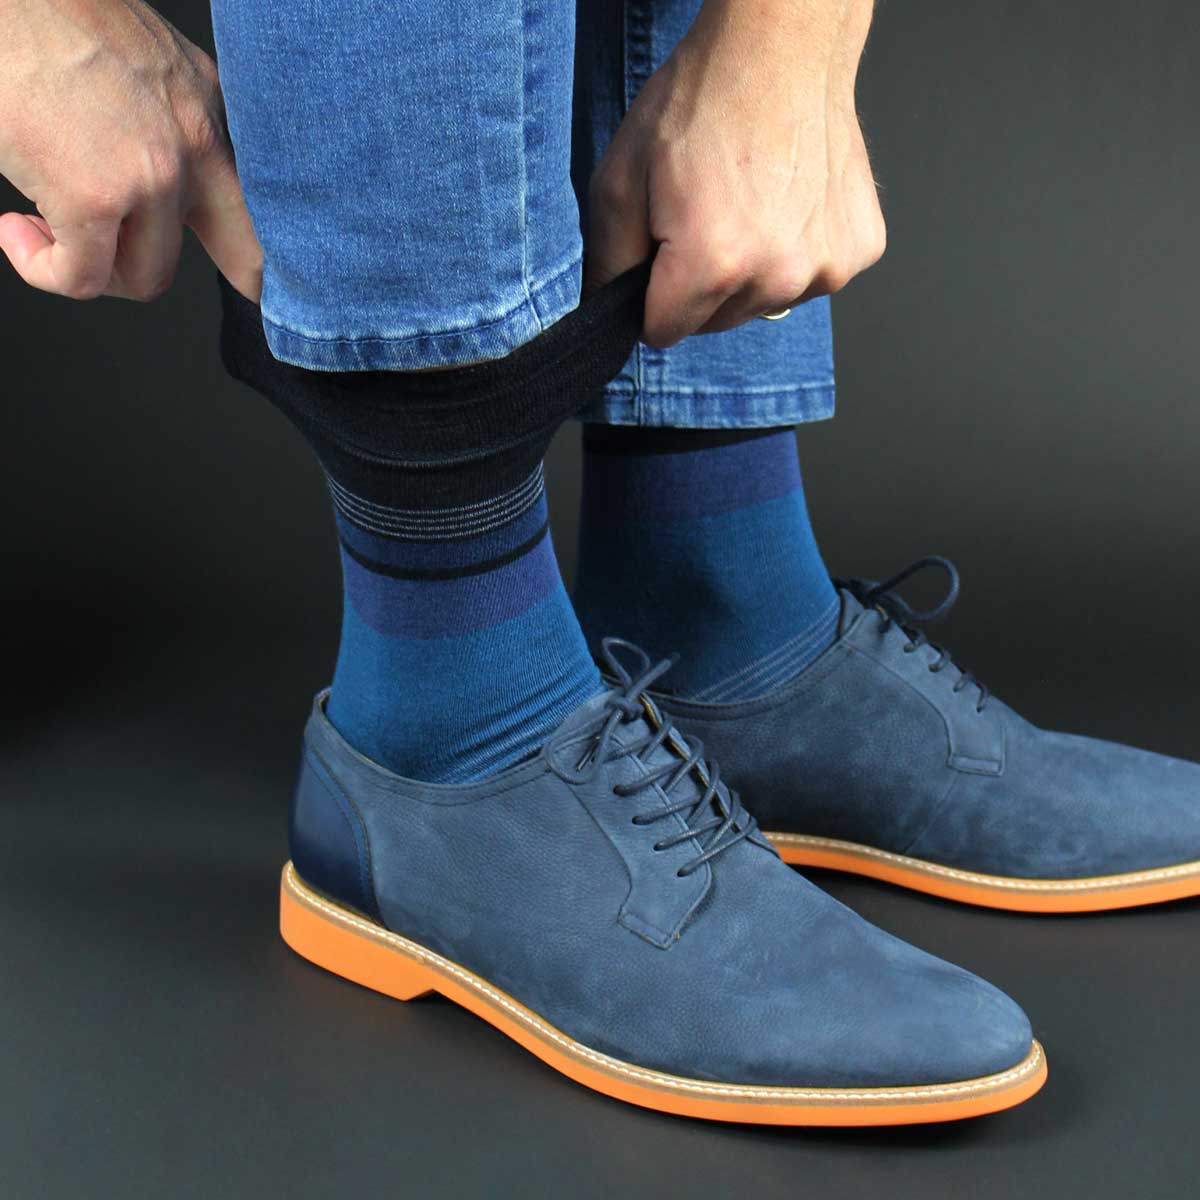 Comfy Socks - Calcetin Comfy Cobre Diseño Franjas